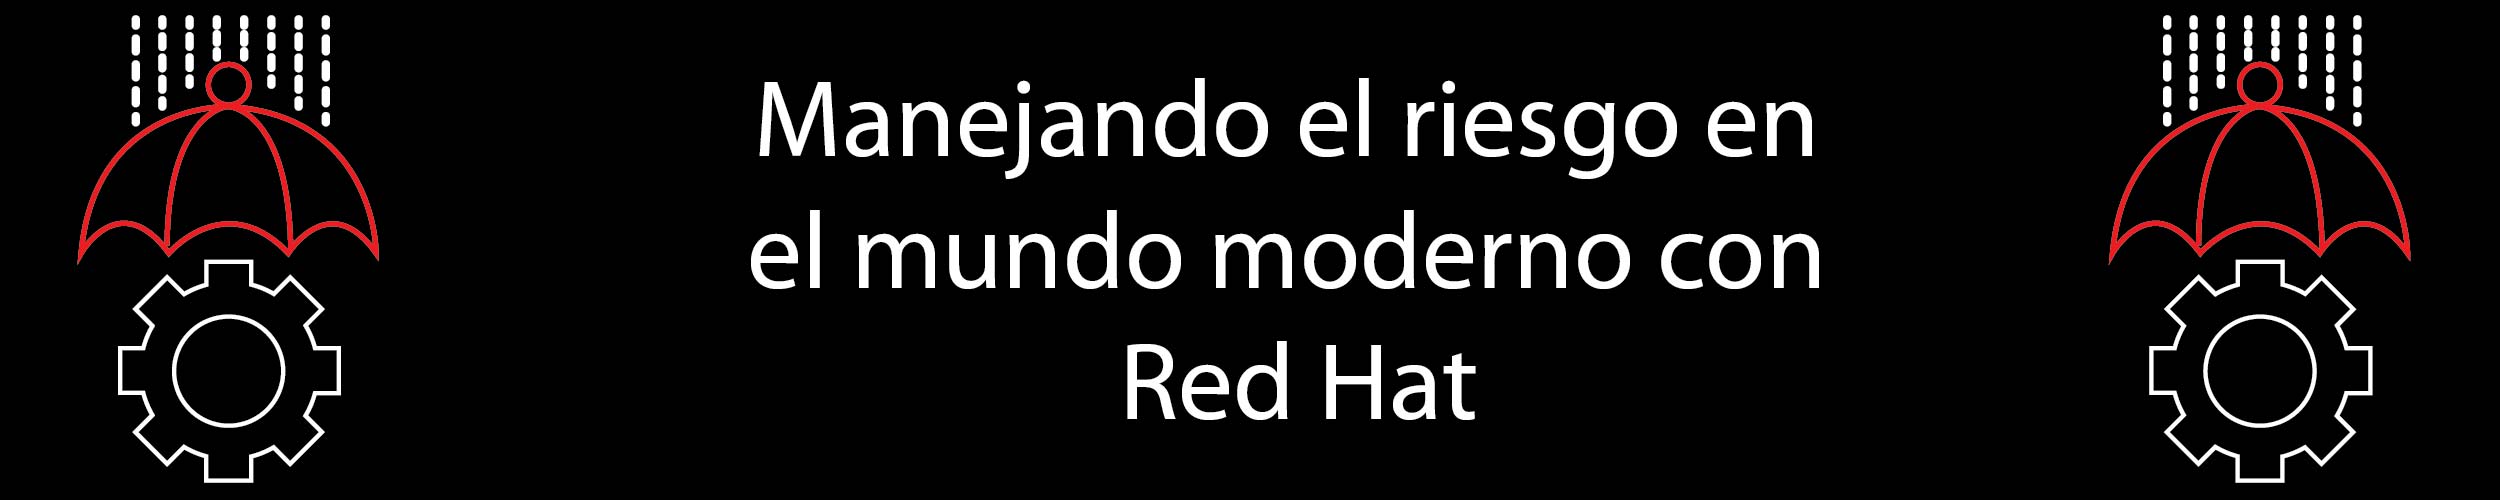 Manejando el riesgo en el mundo moderno con Red Hat